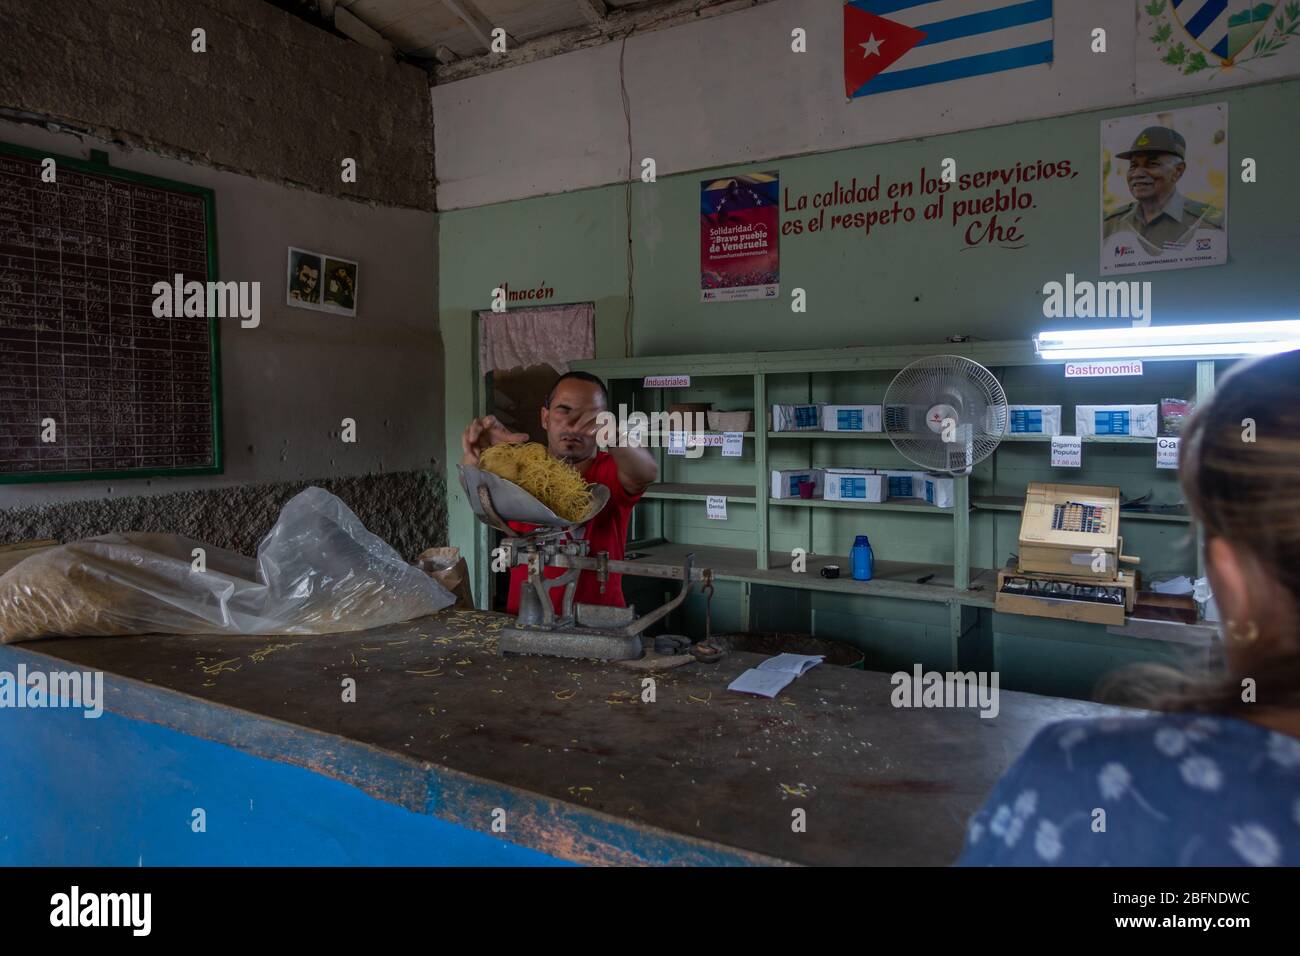 Man serving a portion of pasta at a ration shop on Salvador Cisneros, Viñales, Cuba Stock Photo